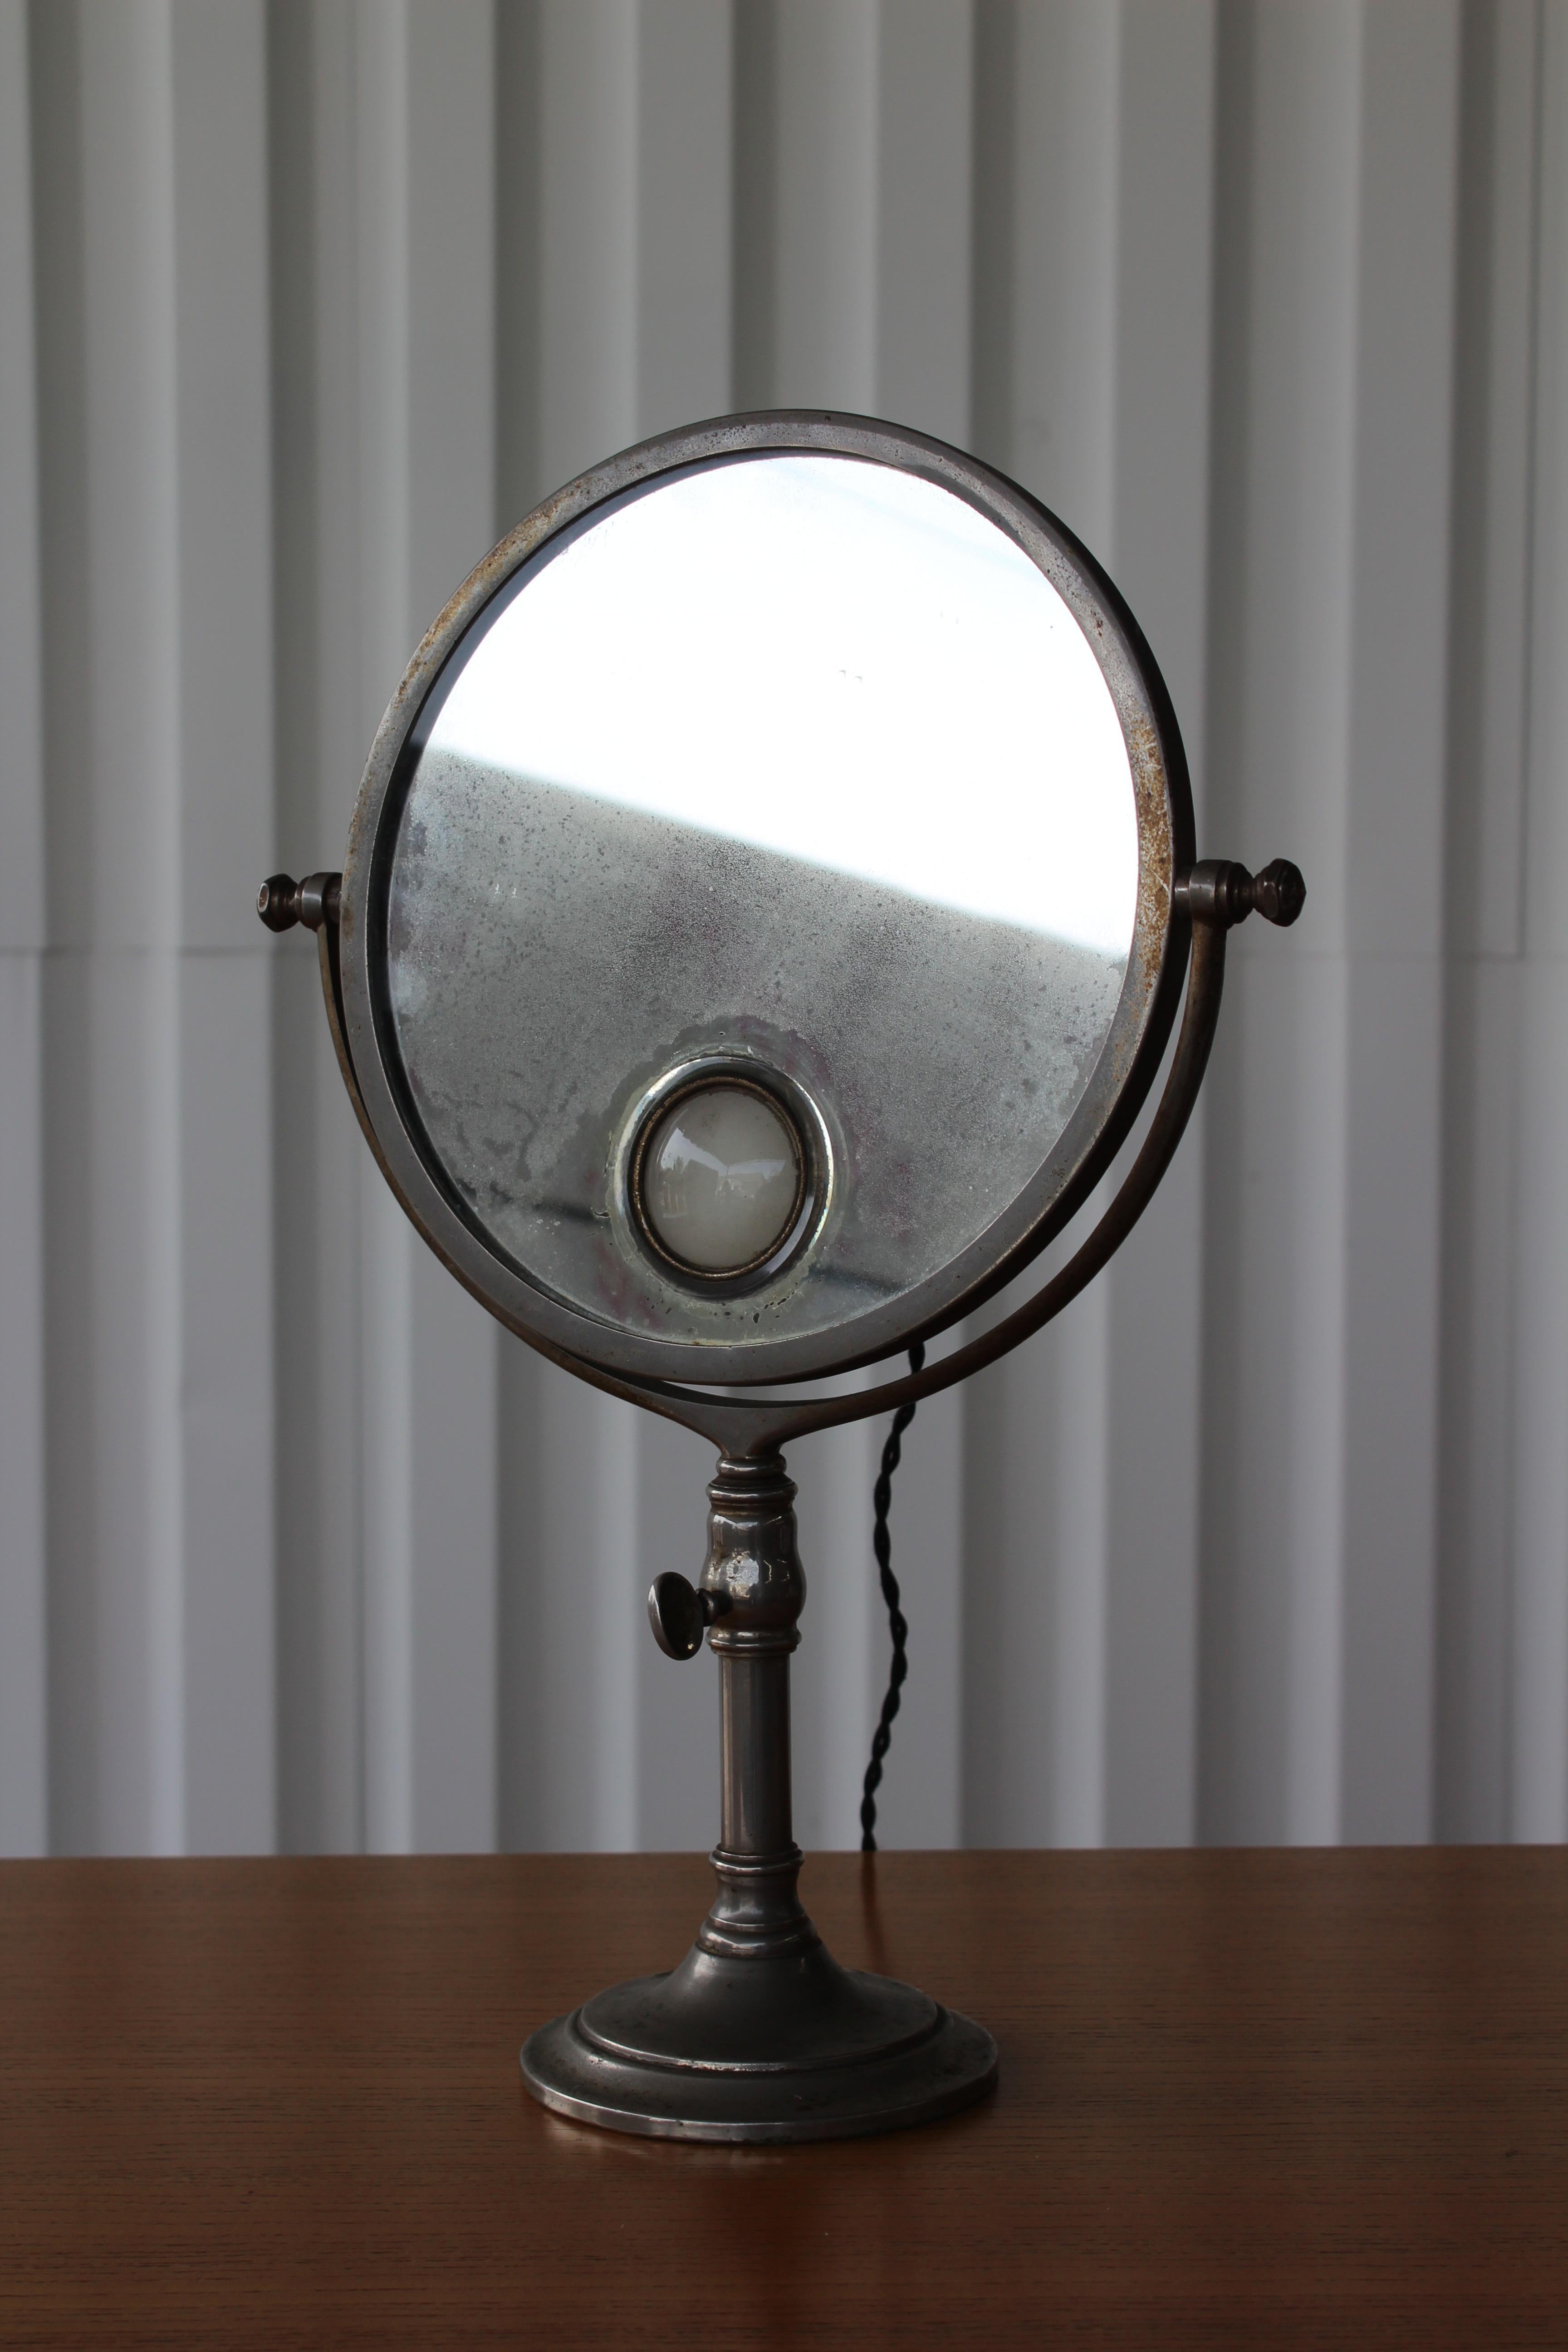 Miroir de courtoisie éclairé et réglable par Brot, France, années 1930. Nouveau câblage aux normes américaines. Nécessite une ampoule française.